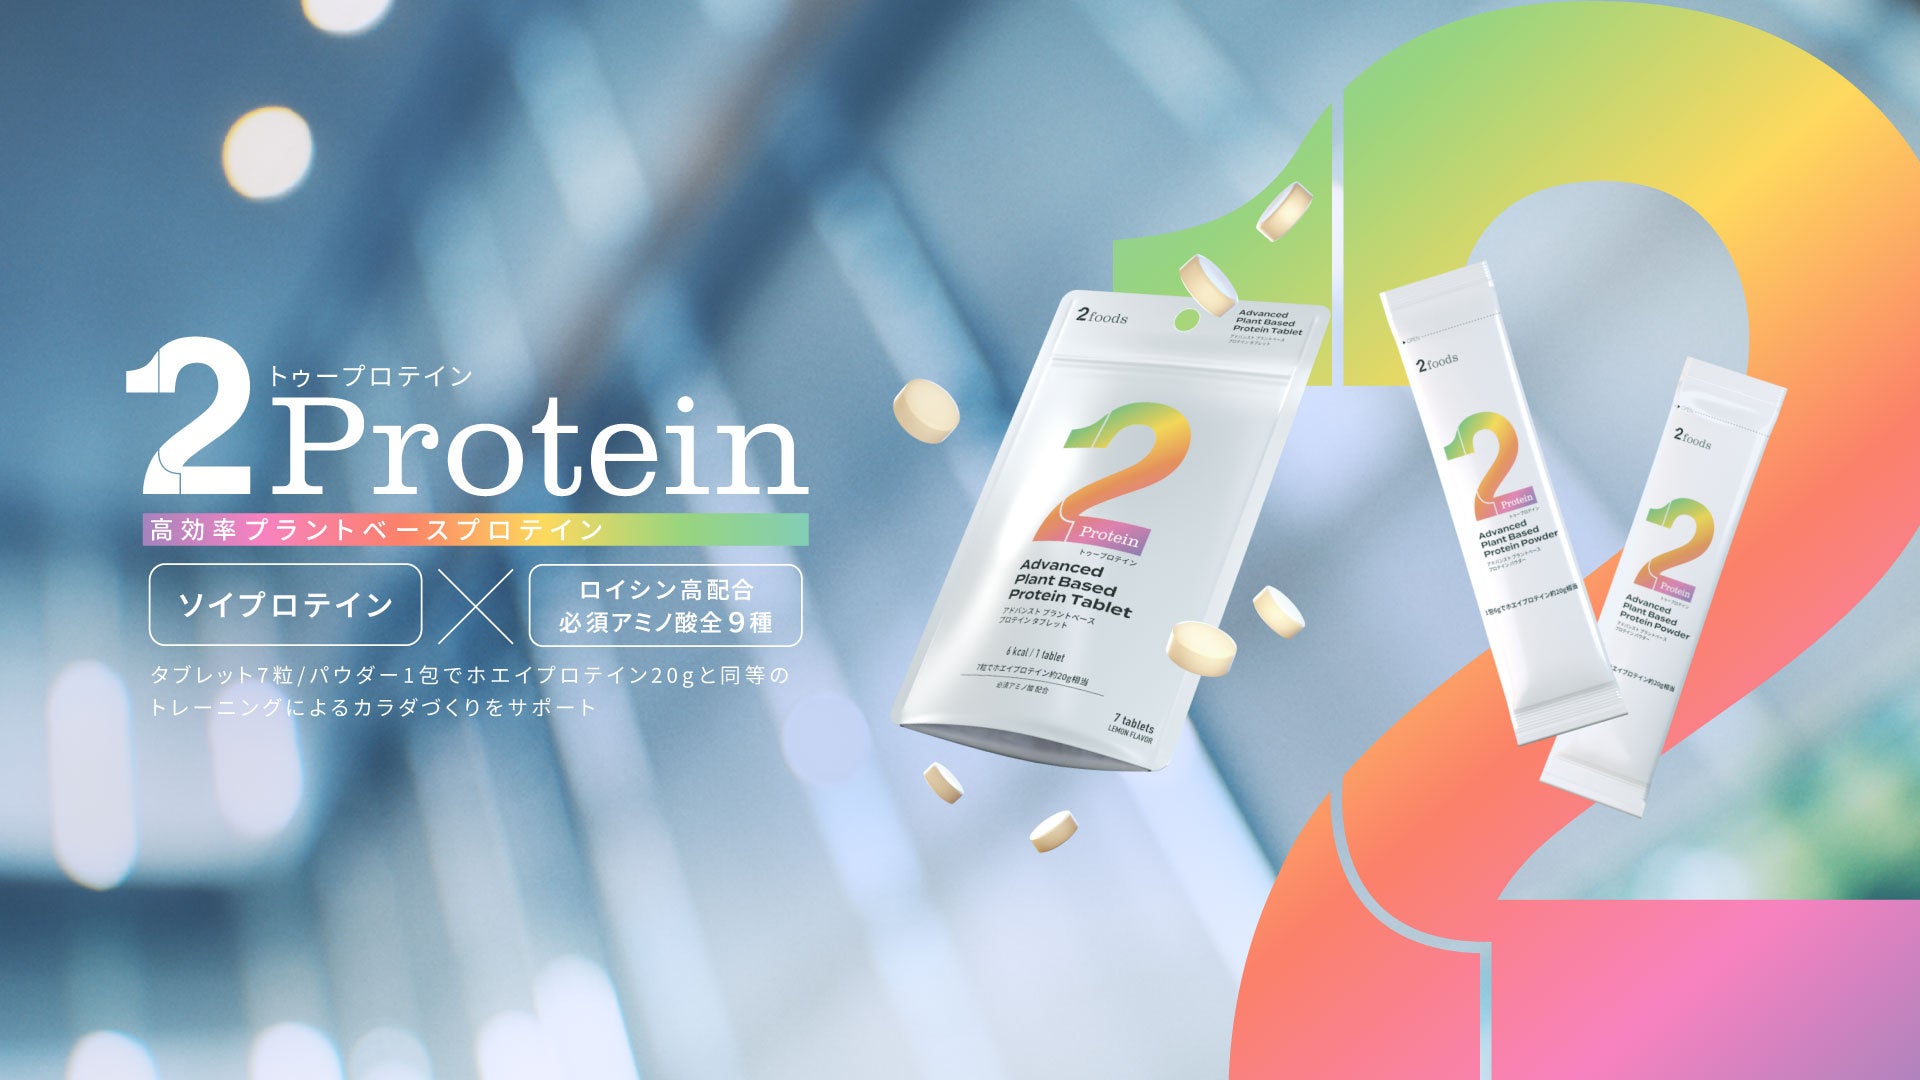 プラントベースフードブランド「2foods」、プロテインをタブレット・パウダー化　いつでもどこでも瞬時に摂れる、次世代型プラントベースプロテイン「2Protein」7月18日発売